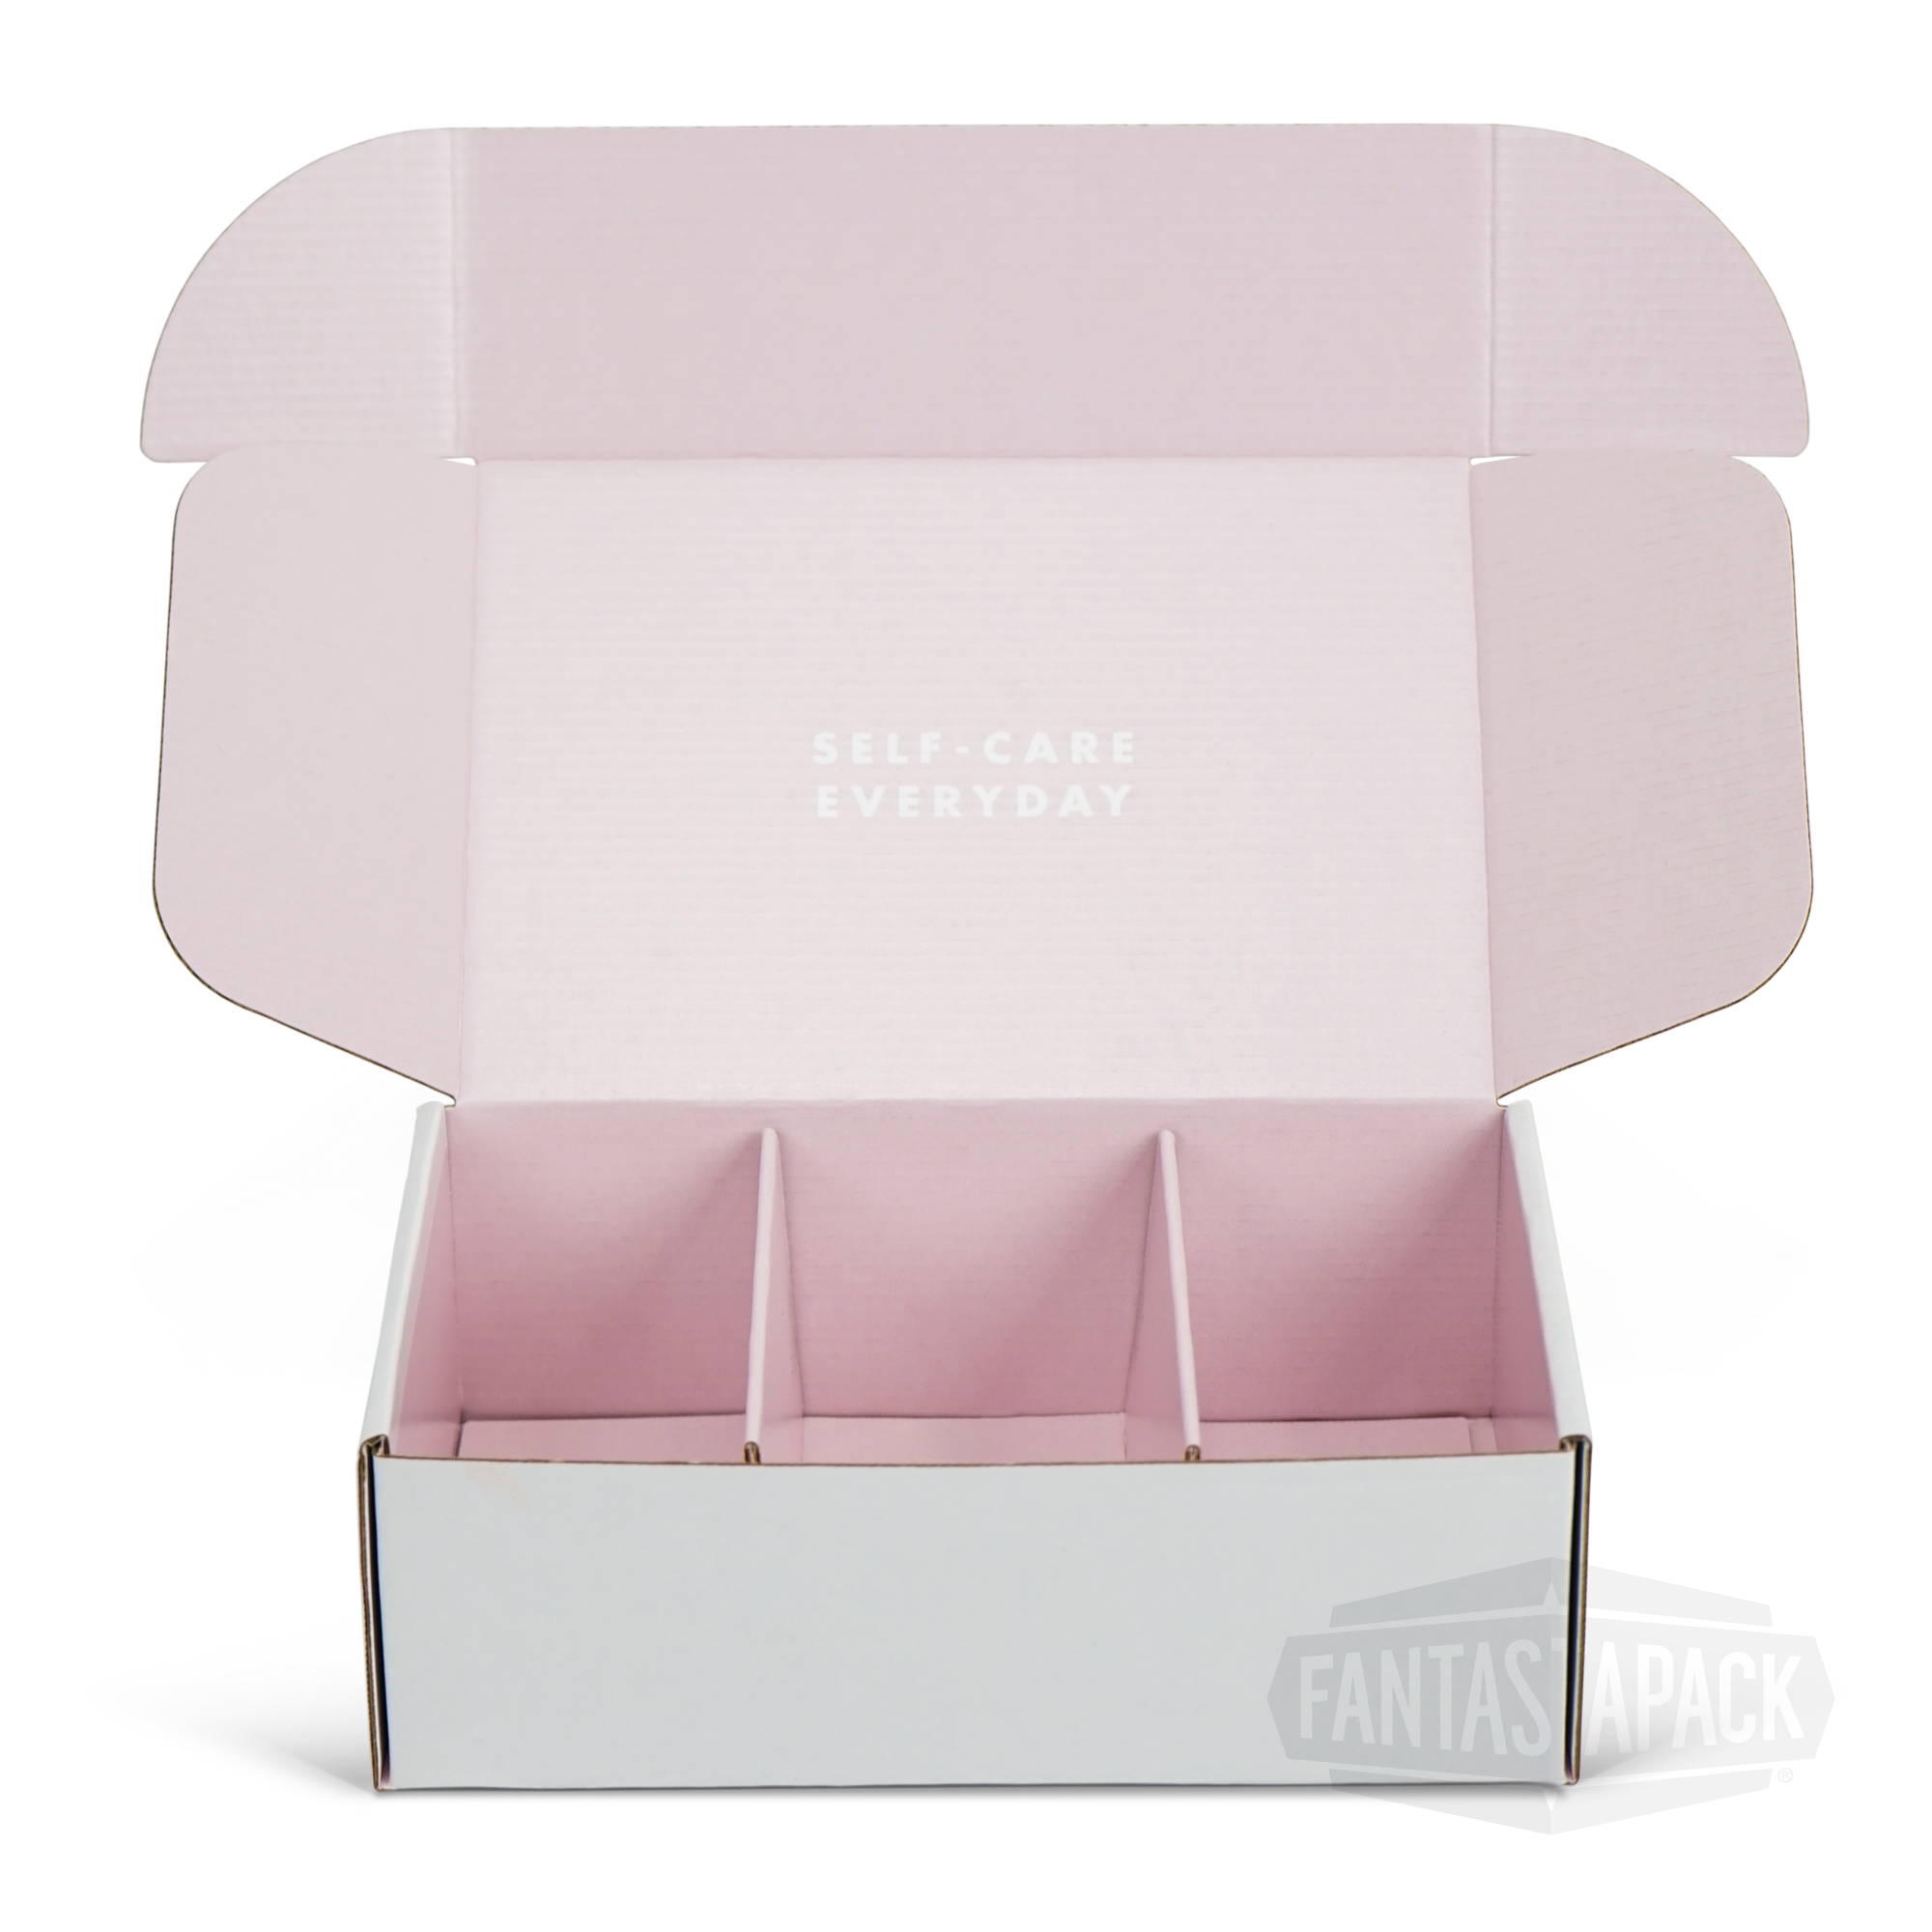 Fantastapack's Standalone Divider Insert inside pink box